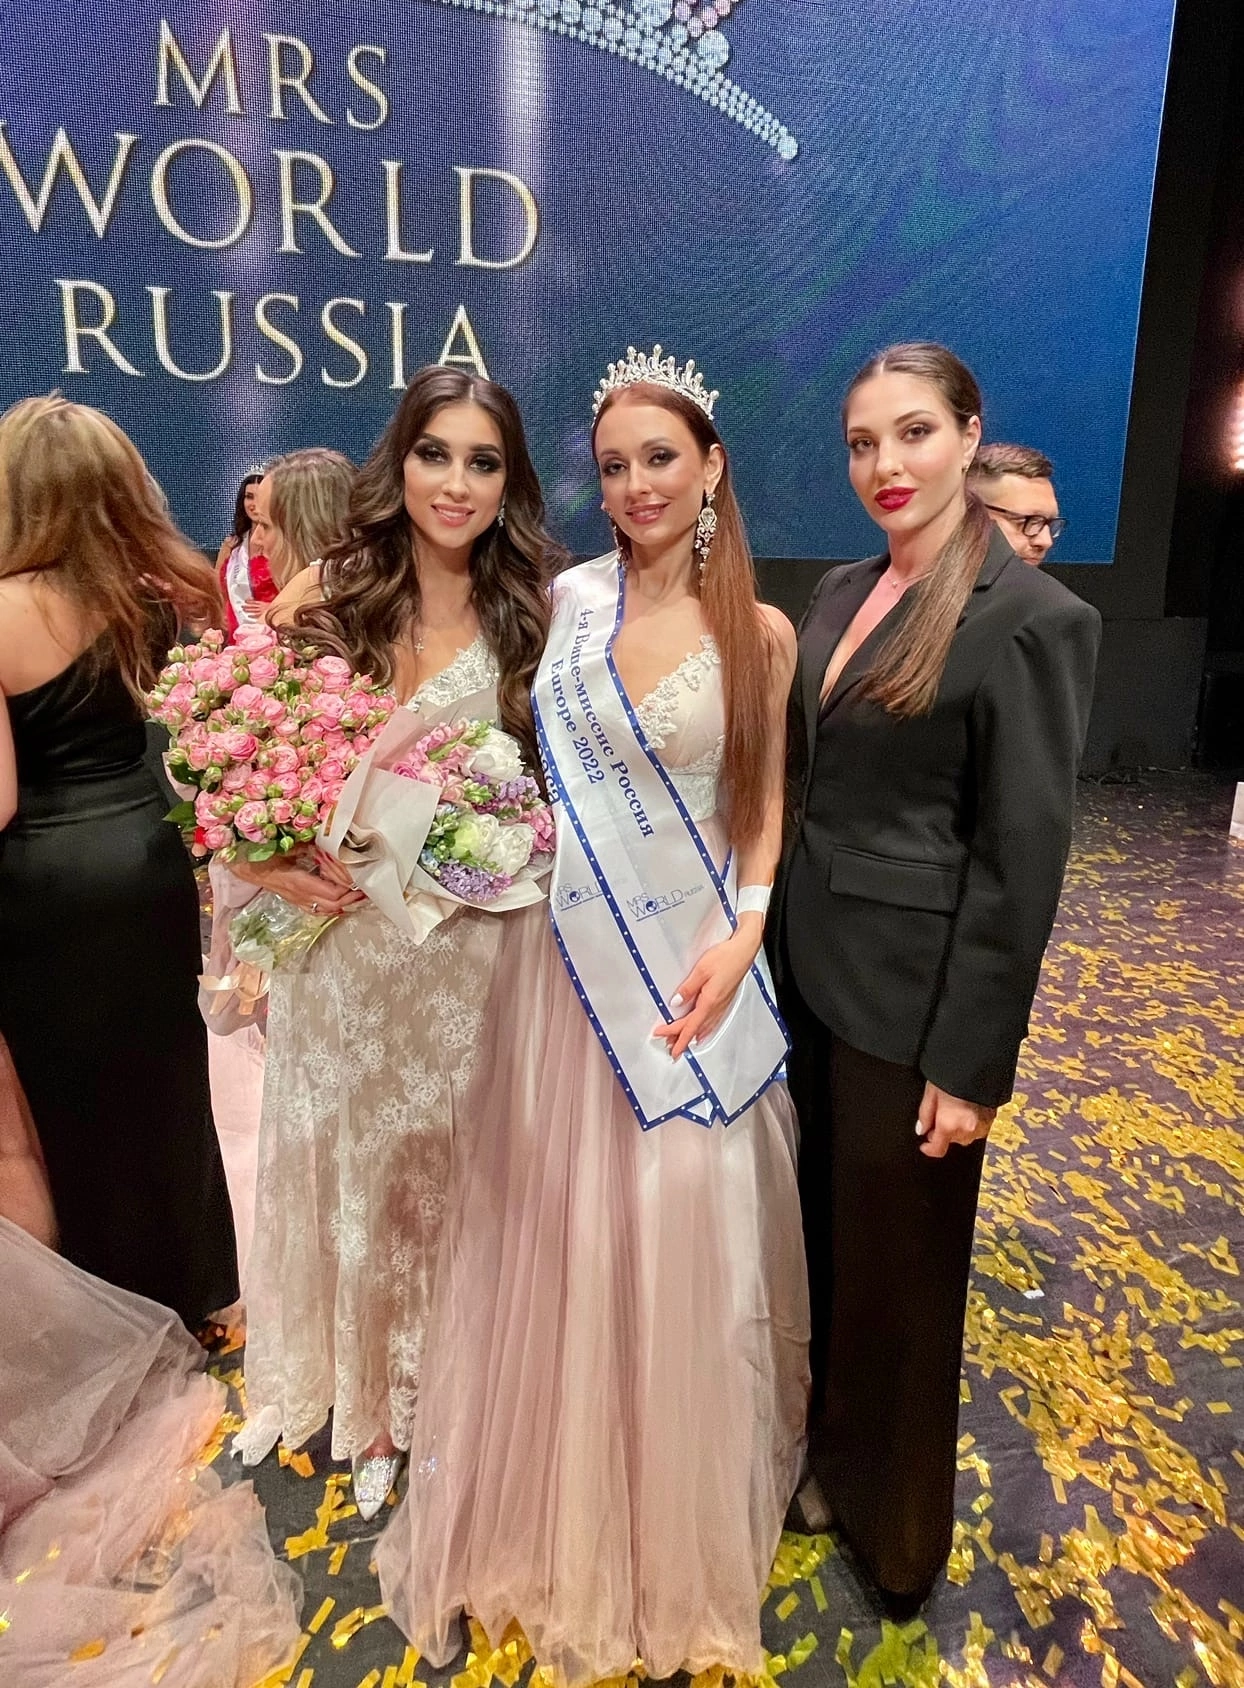 Марина Лукьянова из Судогды завоевала титул «Четвертая вице-миссис» и получила право представлять нашу страну на международных конкурсах красоты!